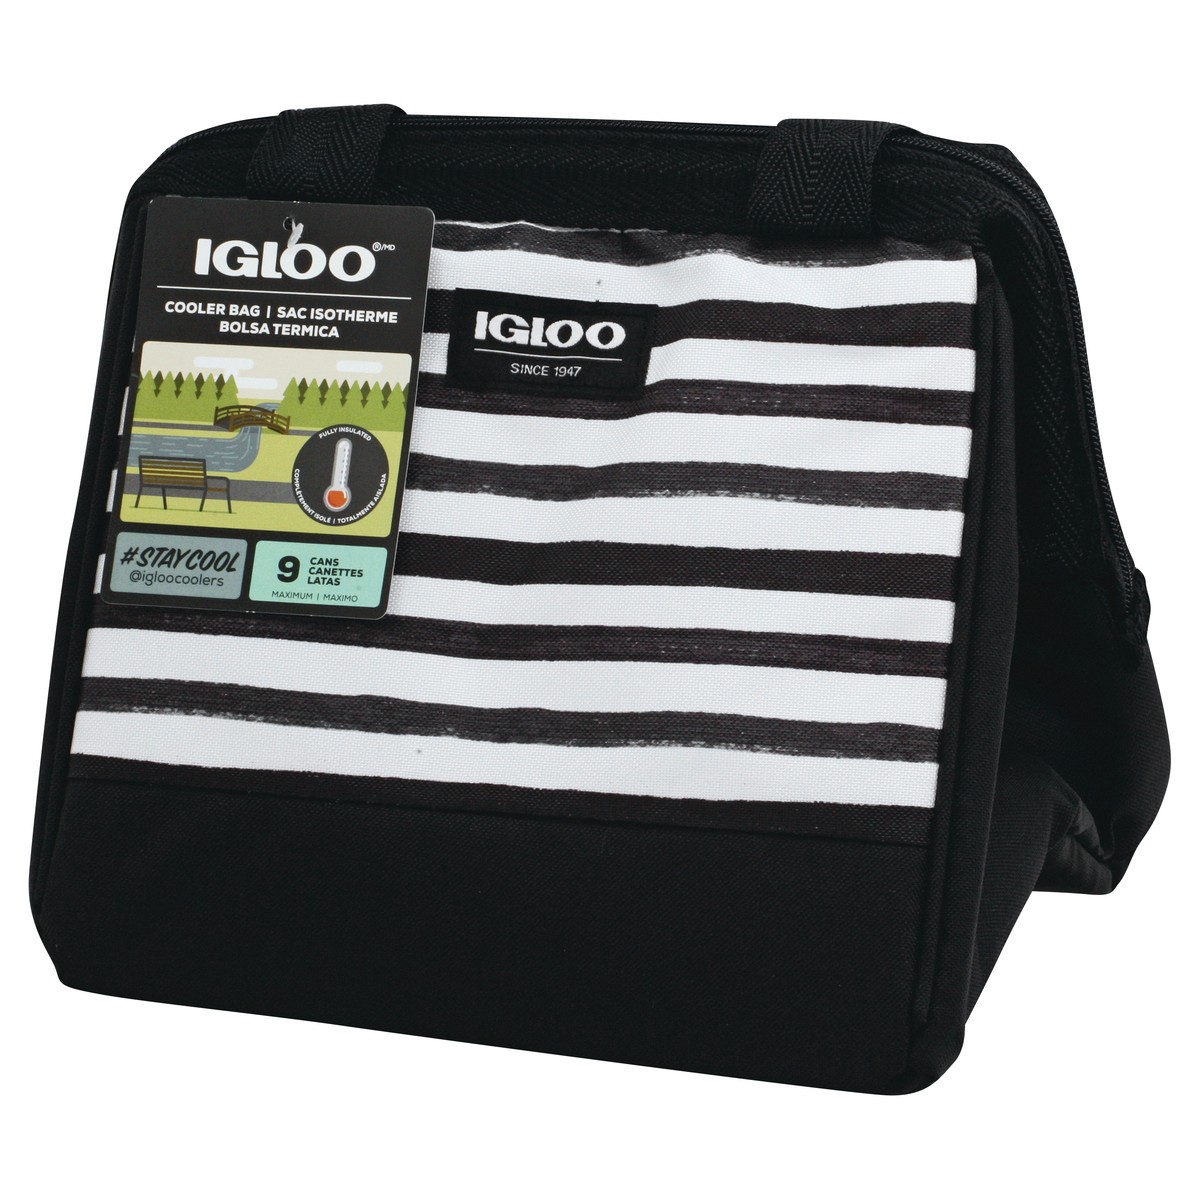 slide 3 of 8, Igloo Cooler Bag, Black/White Stripes, Leftover Tote, 9 Cans, 1 ct